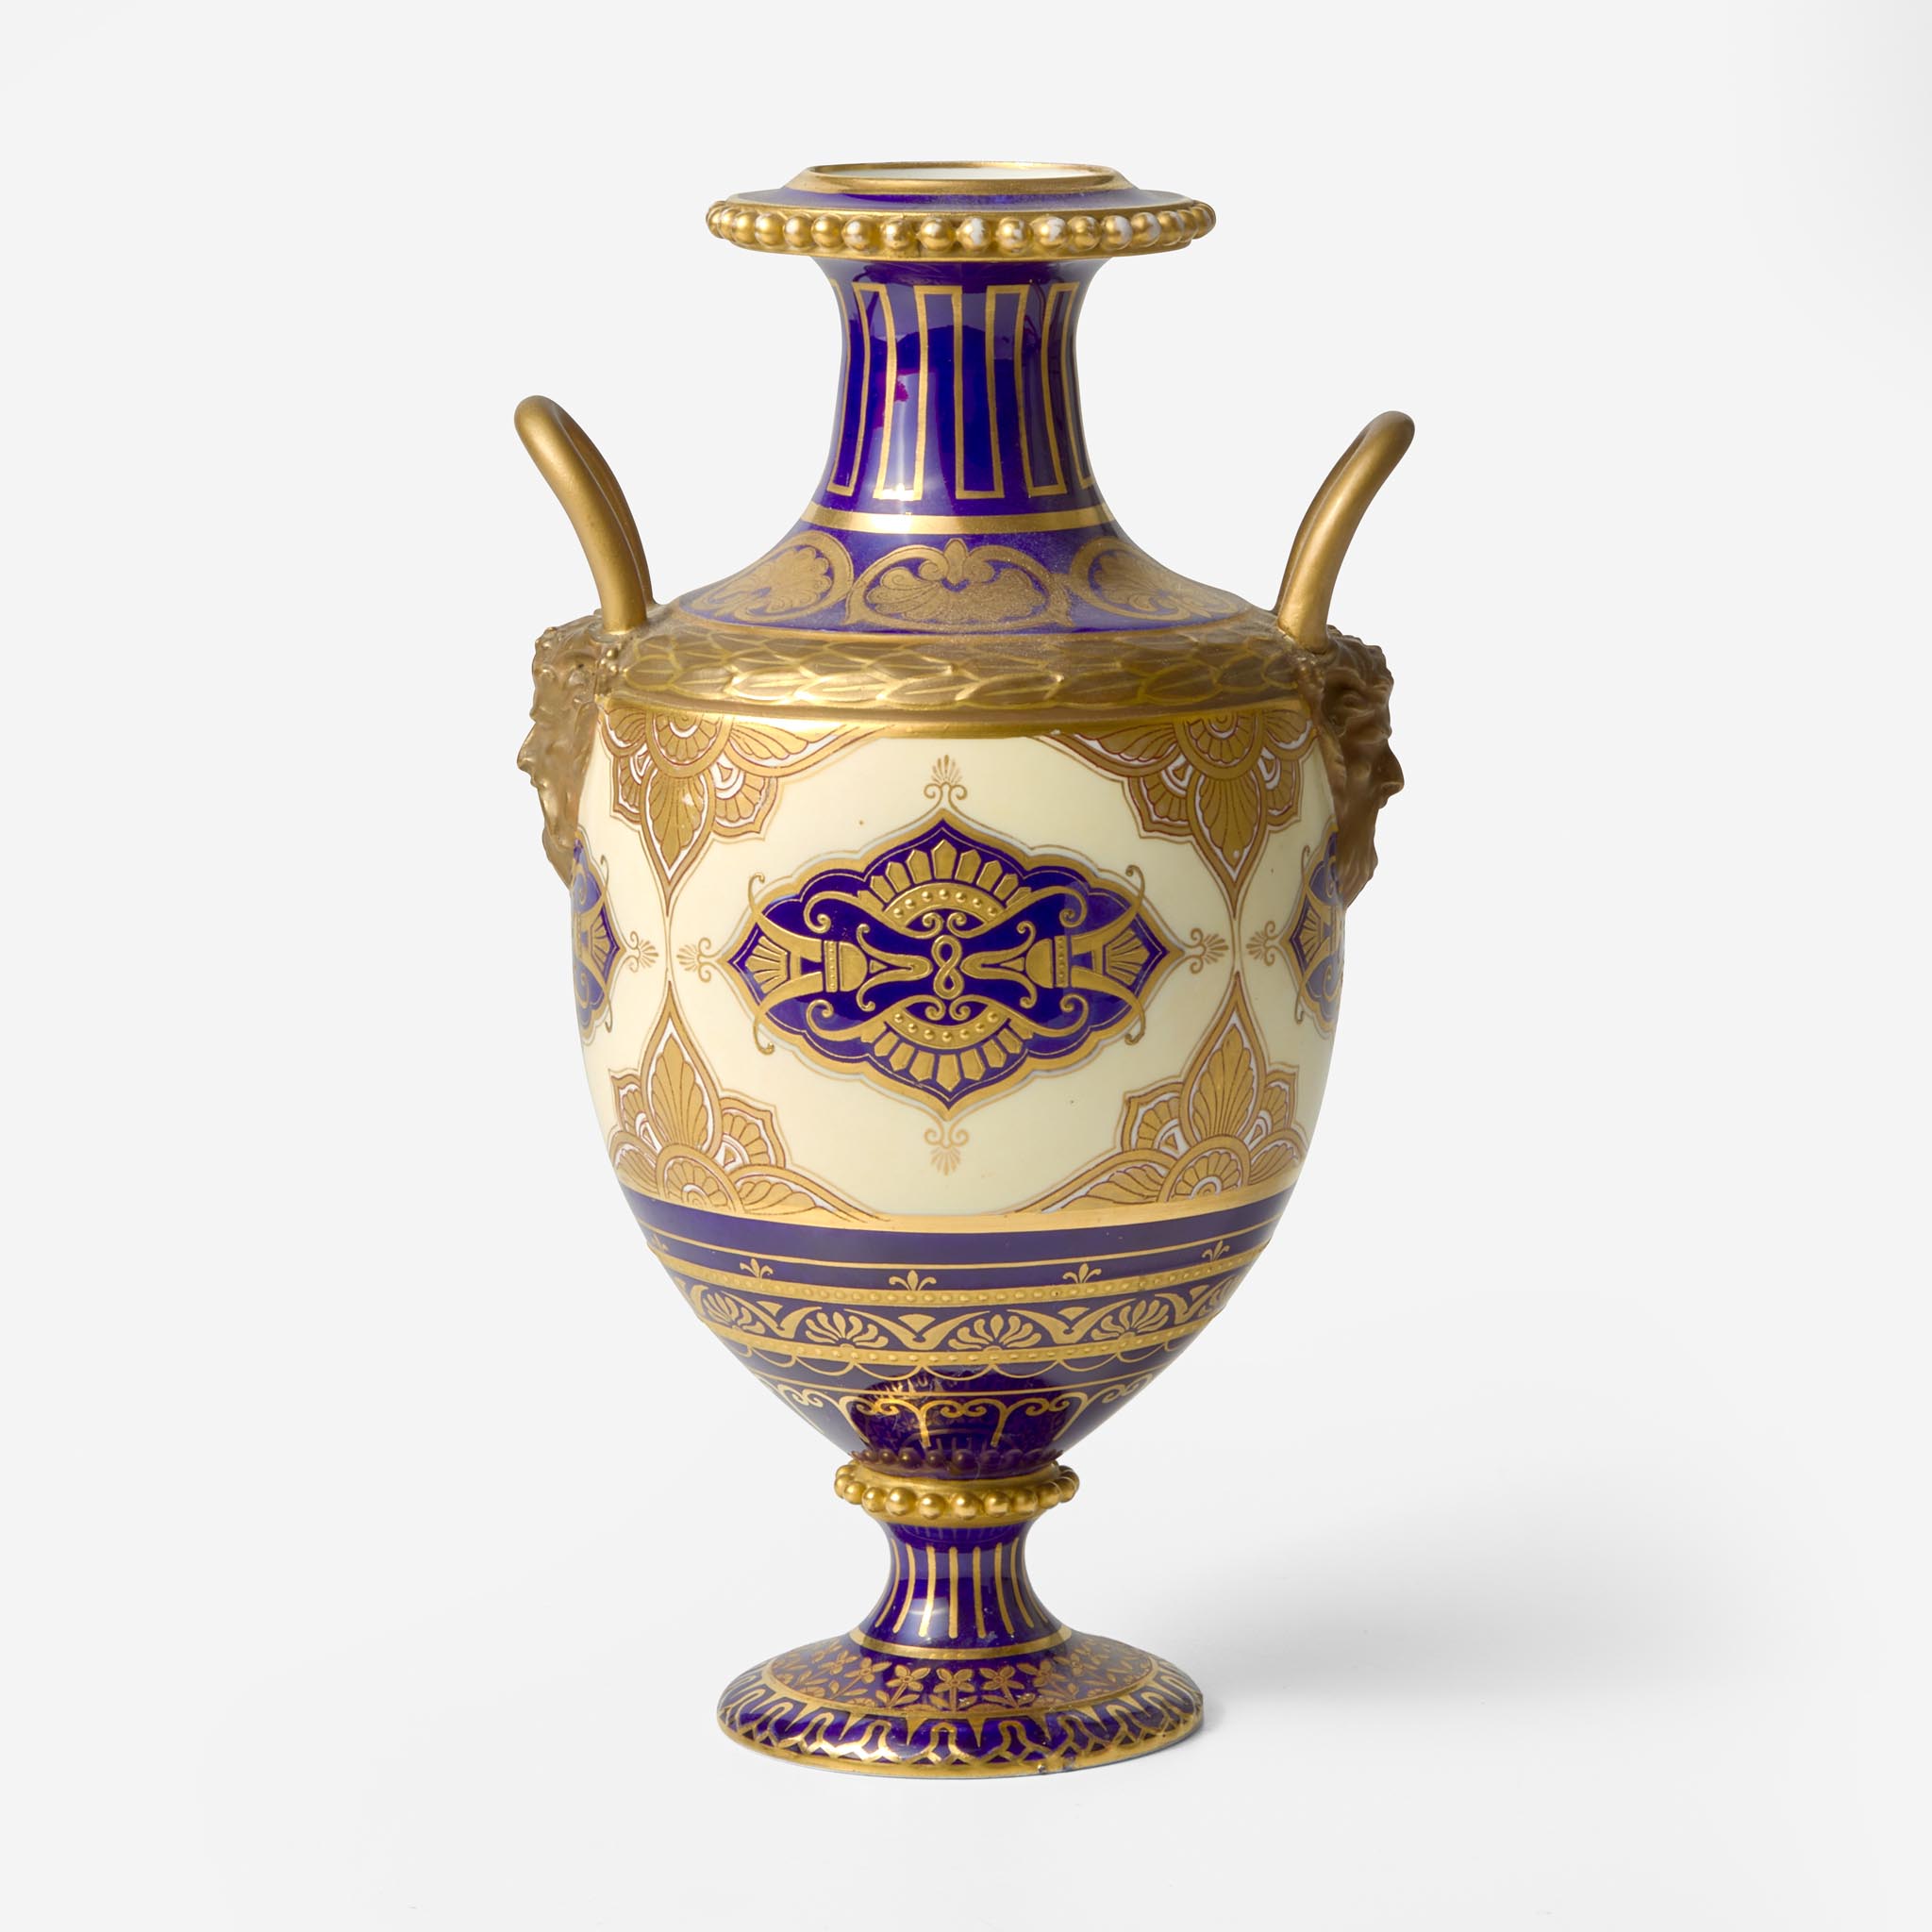 A Wedgwood Aesthetic Period Bone China Handled Vase UK, 1870s - Image 2 of 3